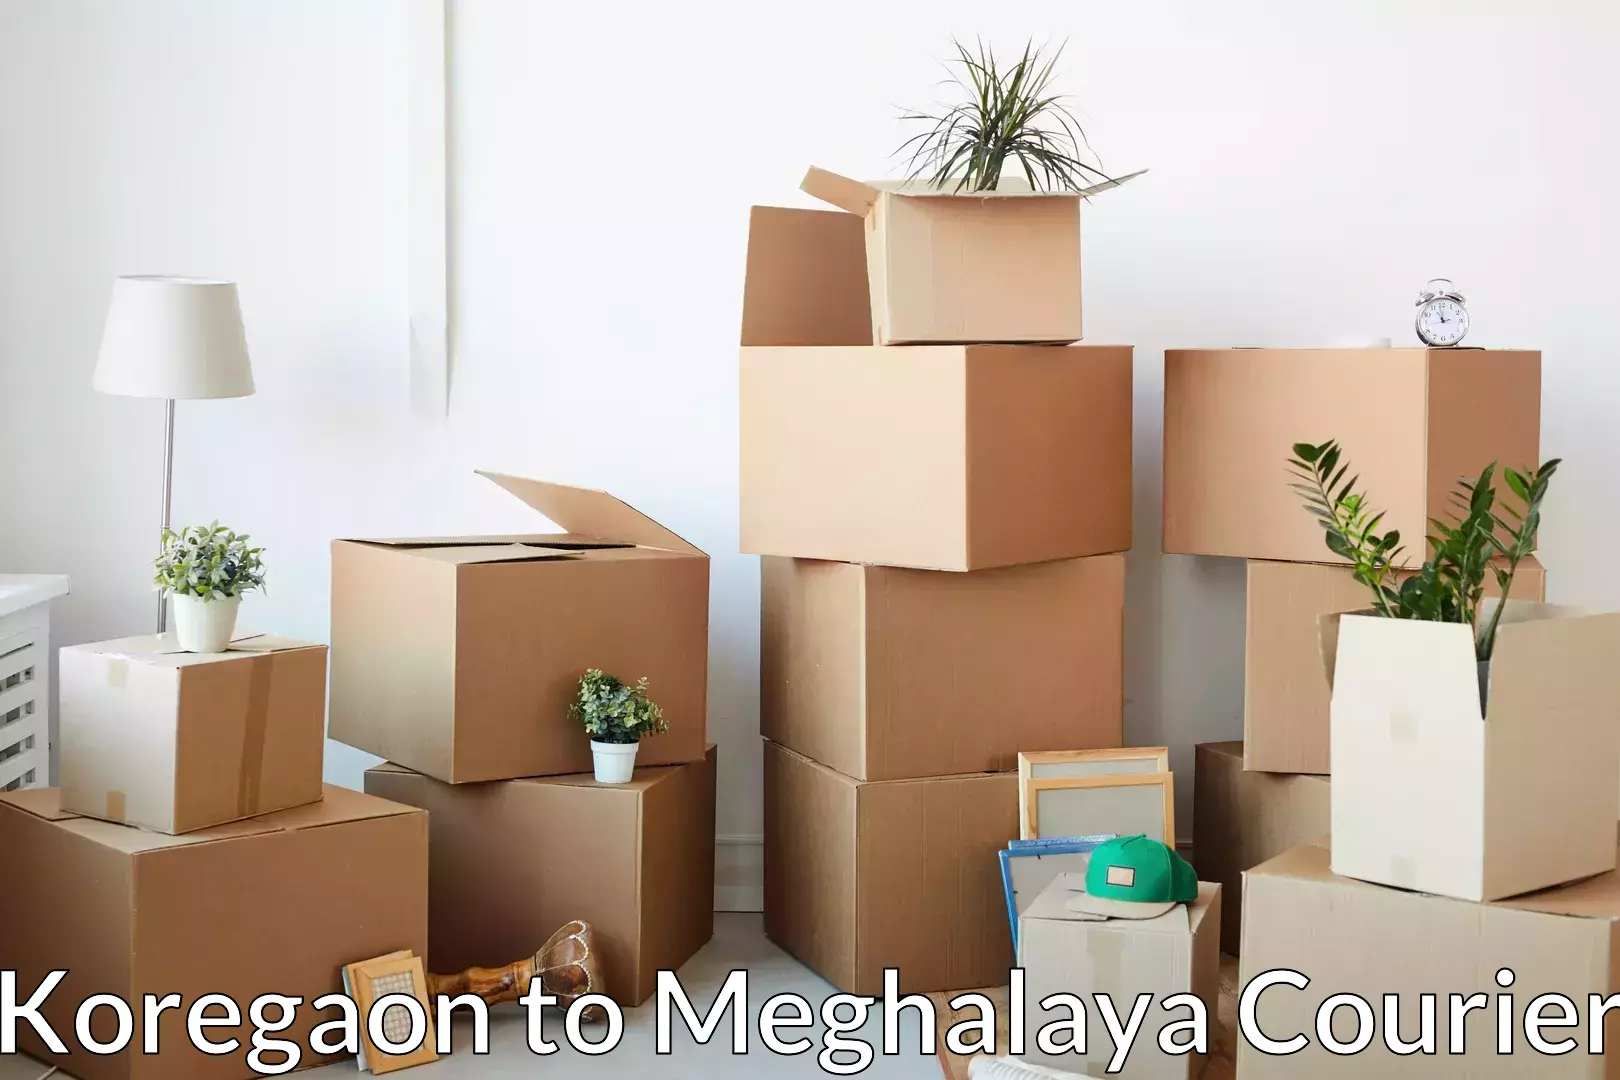 Residential furniture transport Koregaon to Meghalaya